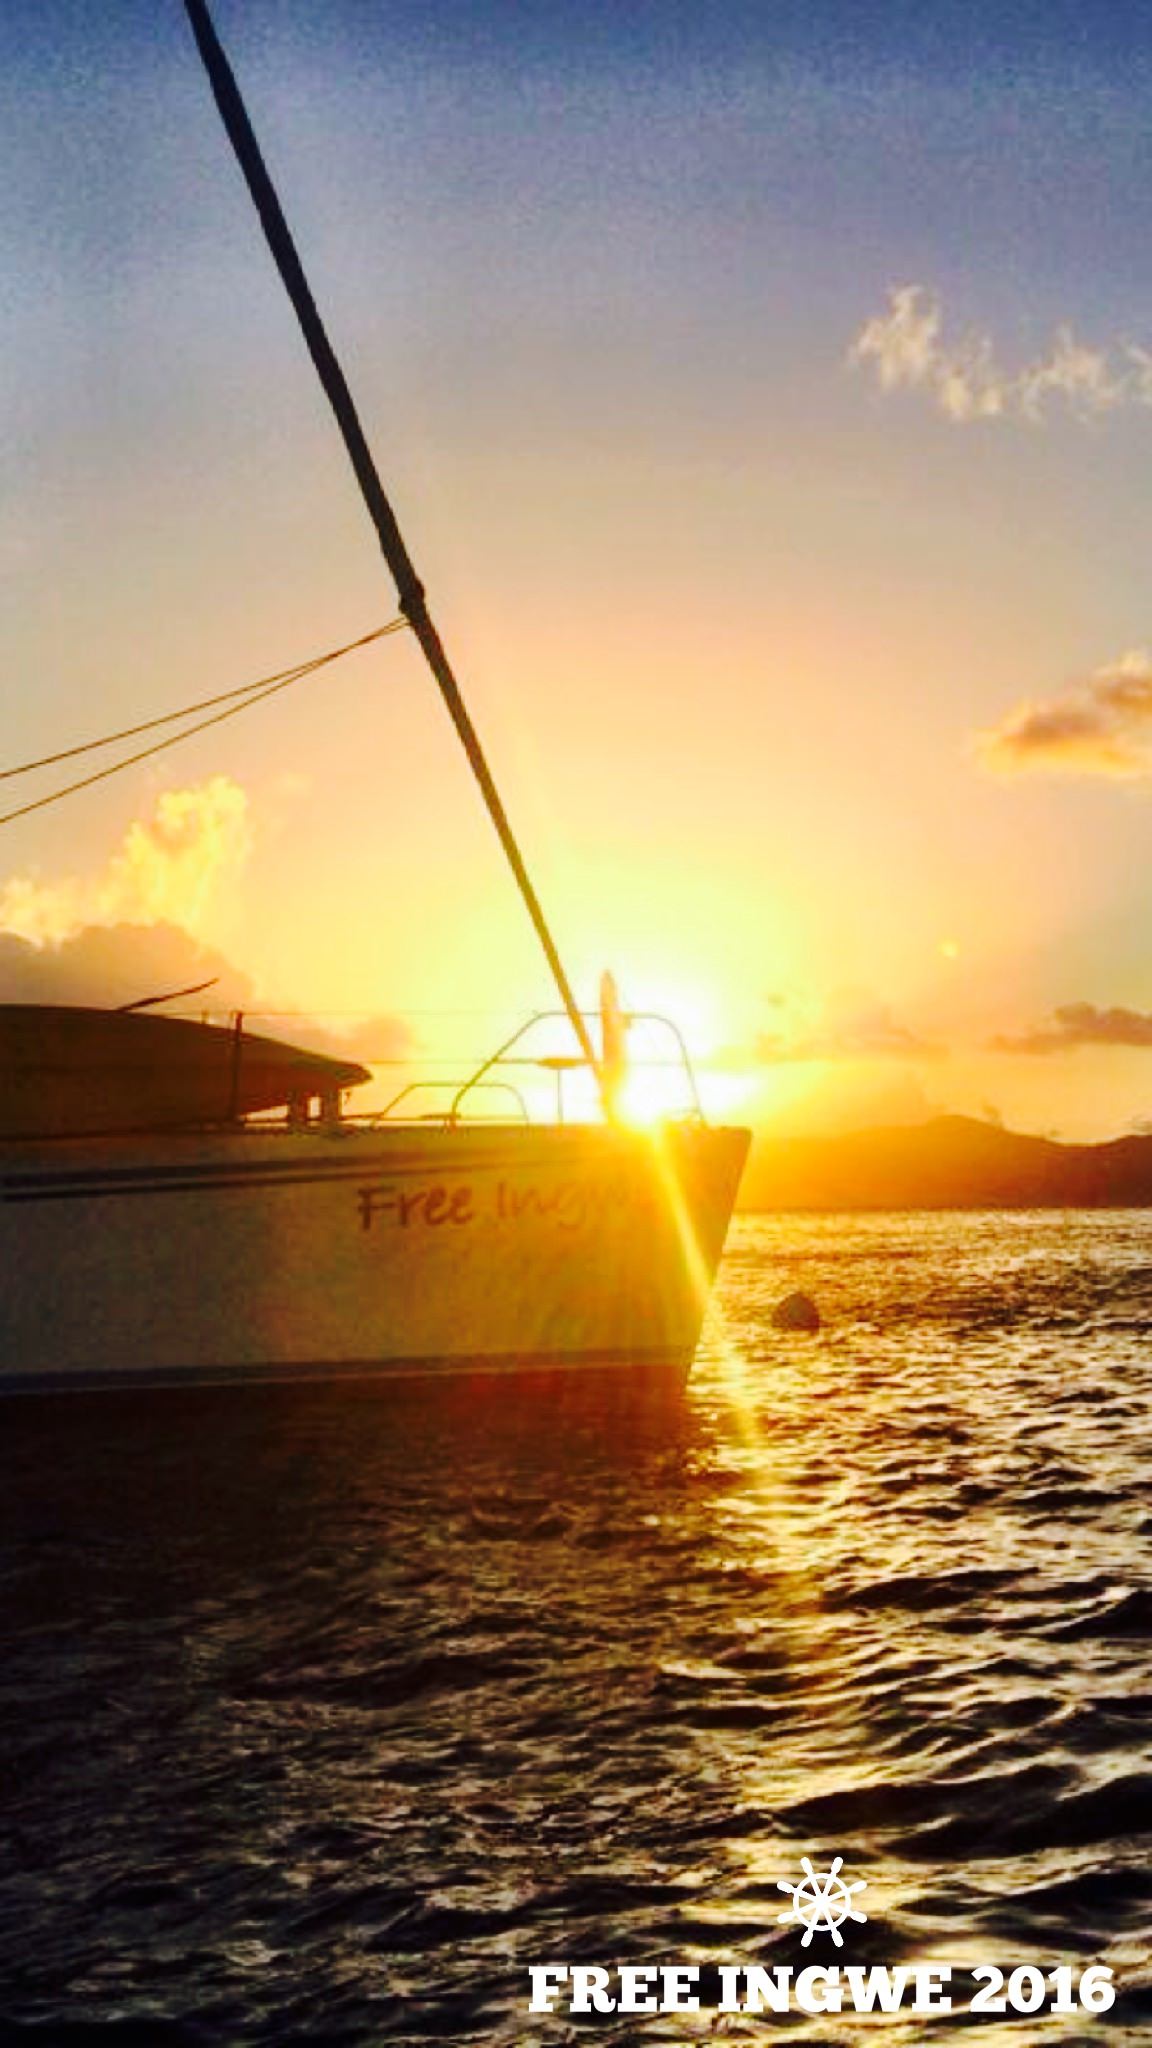 FREE INGWE Yacht Charter - Sunset